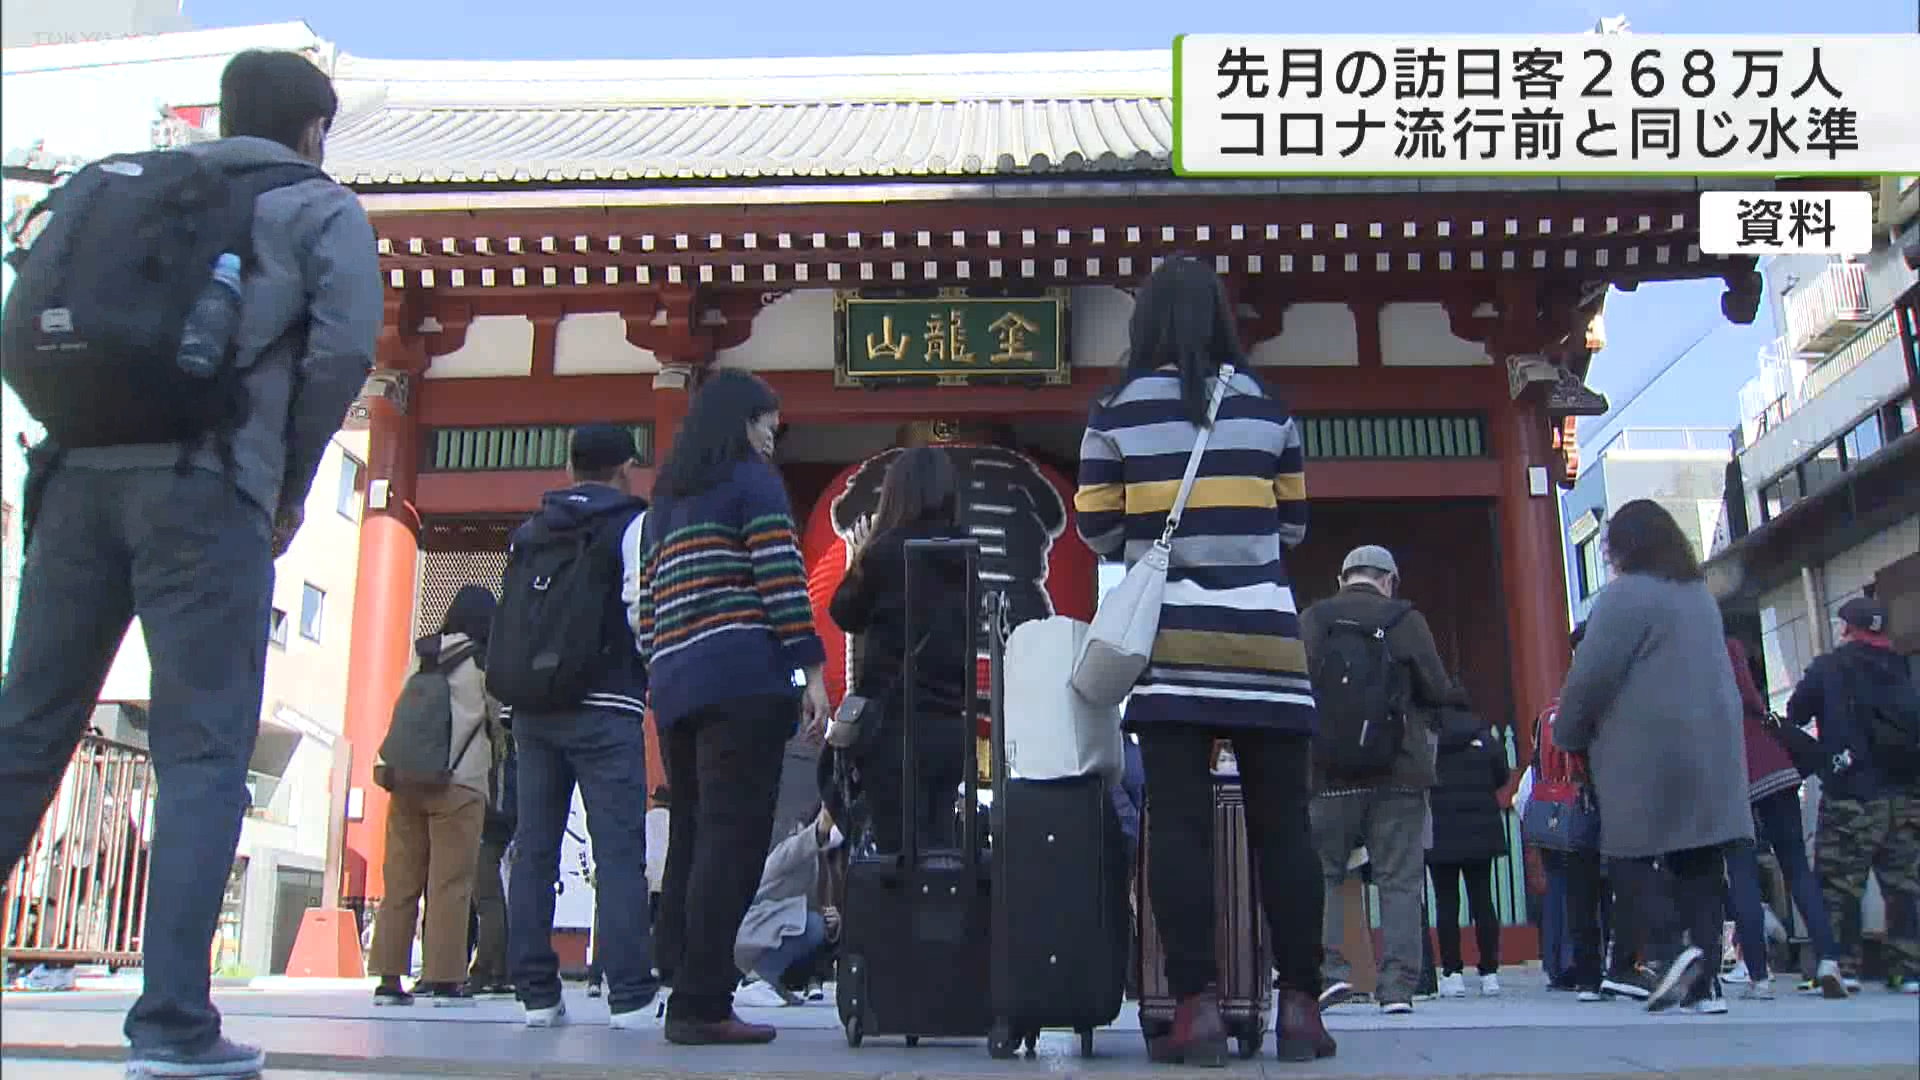 1月に日本に訪れた外国人客は268万8100人で、新型コロナウイルス流行前の2019年1月と同じ水準でした。